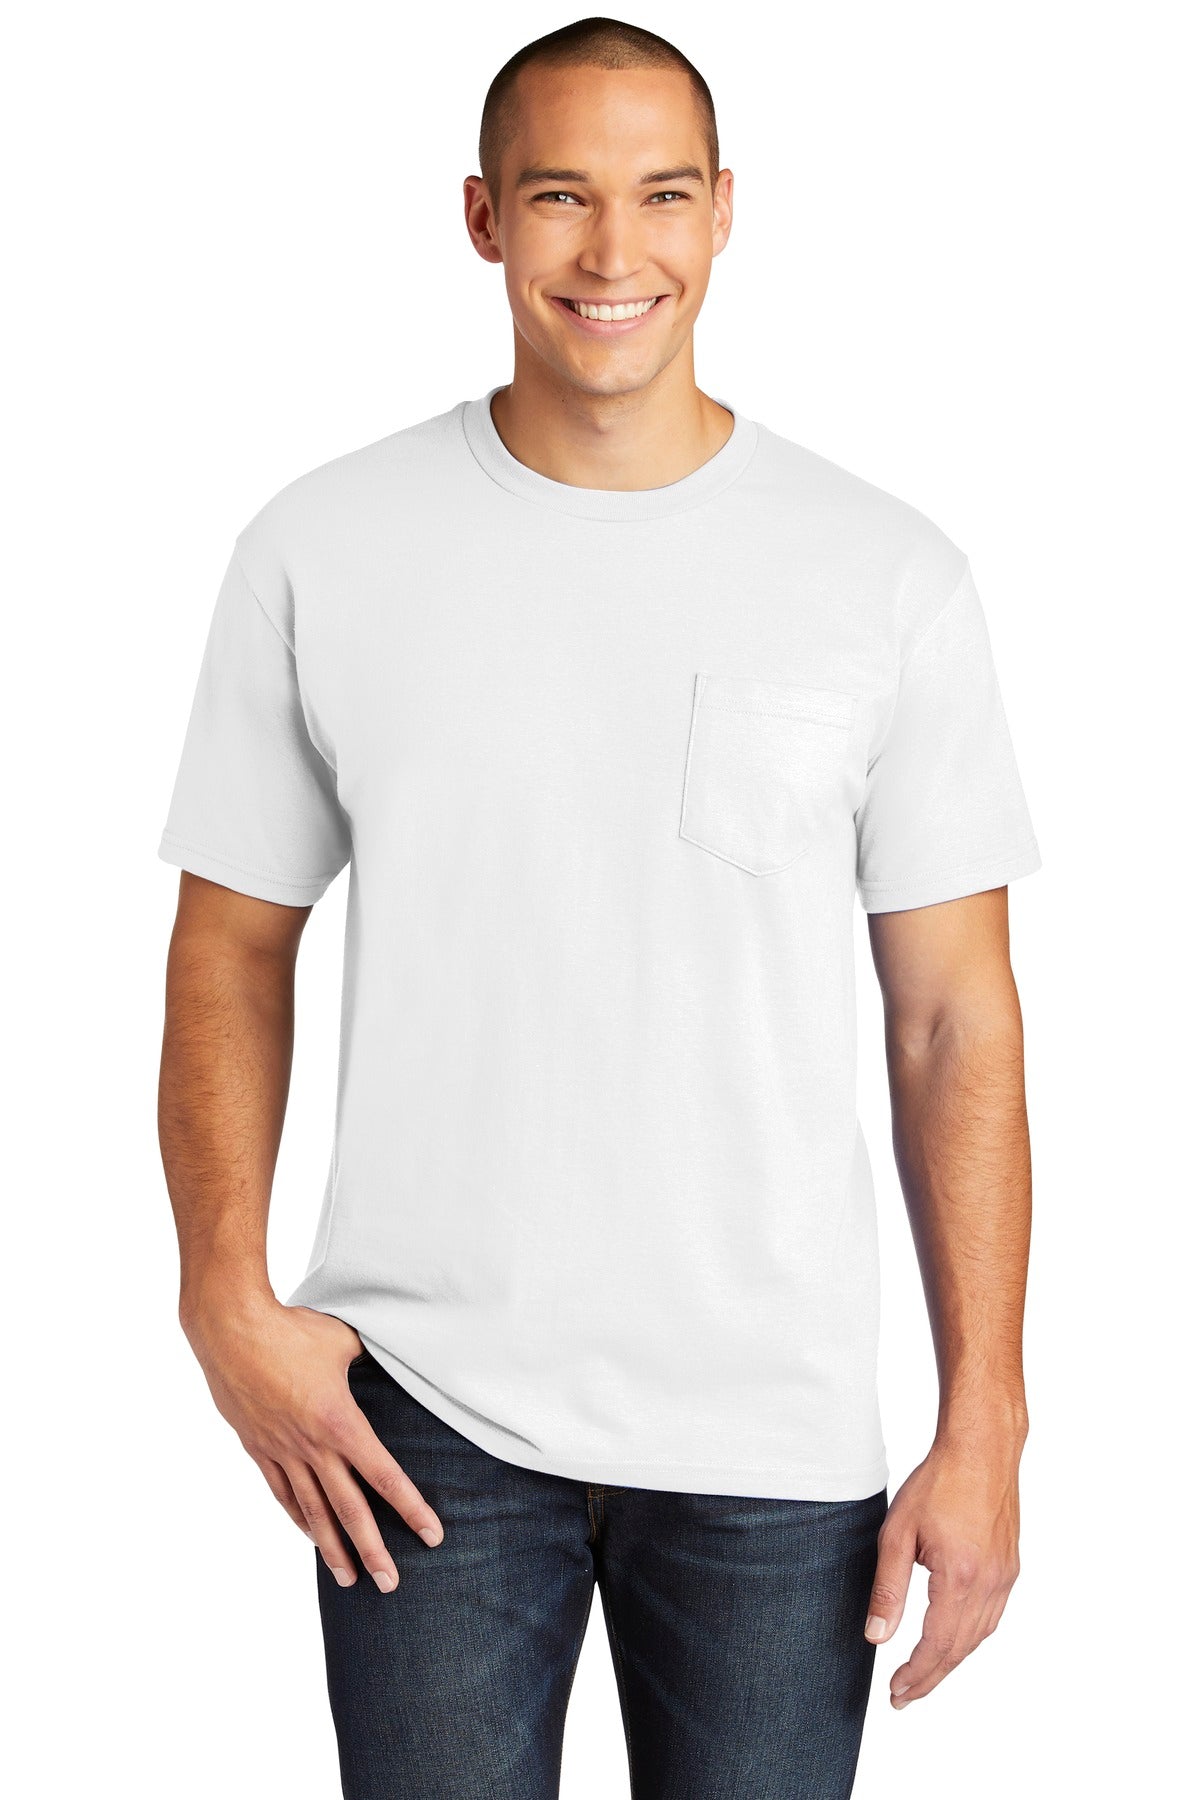 Gildan Hammer ™ Pocket T-Shirt. H300